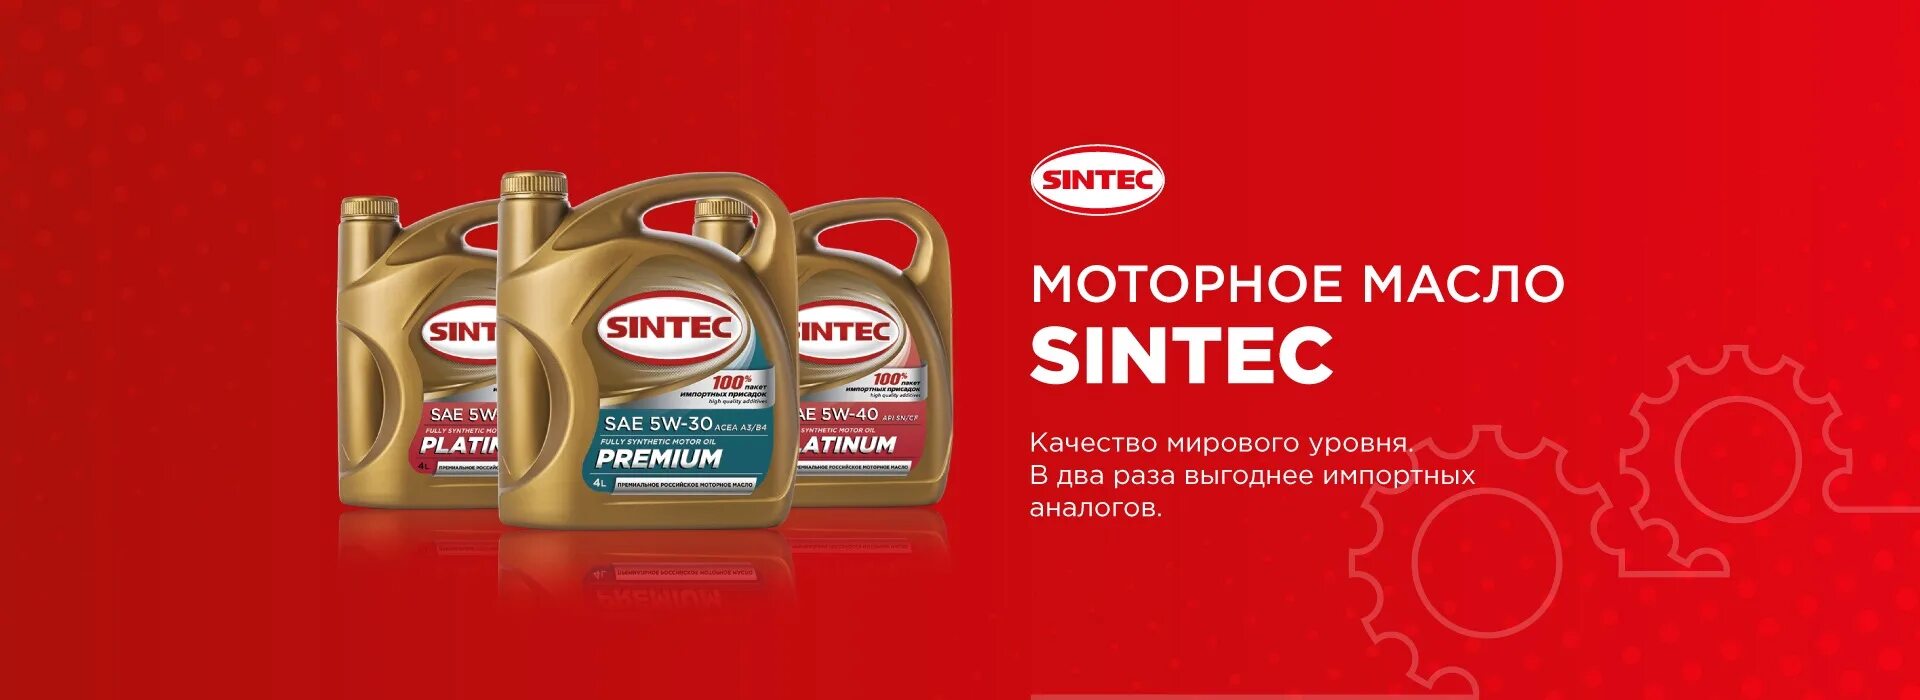 Моторное масло Sintec PNG. Sintec Platinum SAE 5w-30. Моторное масло Синтек реклама. Синтек масло логотип. Масло синтек артикулы